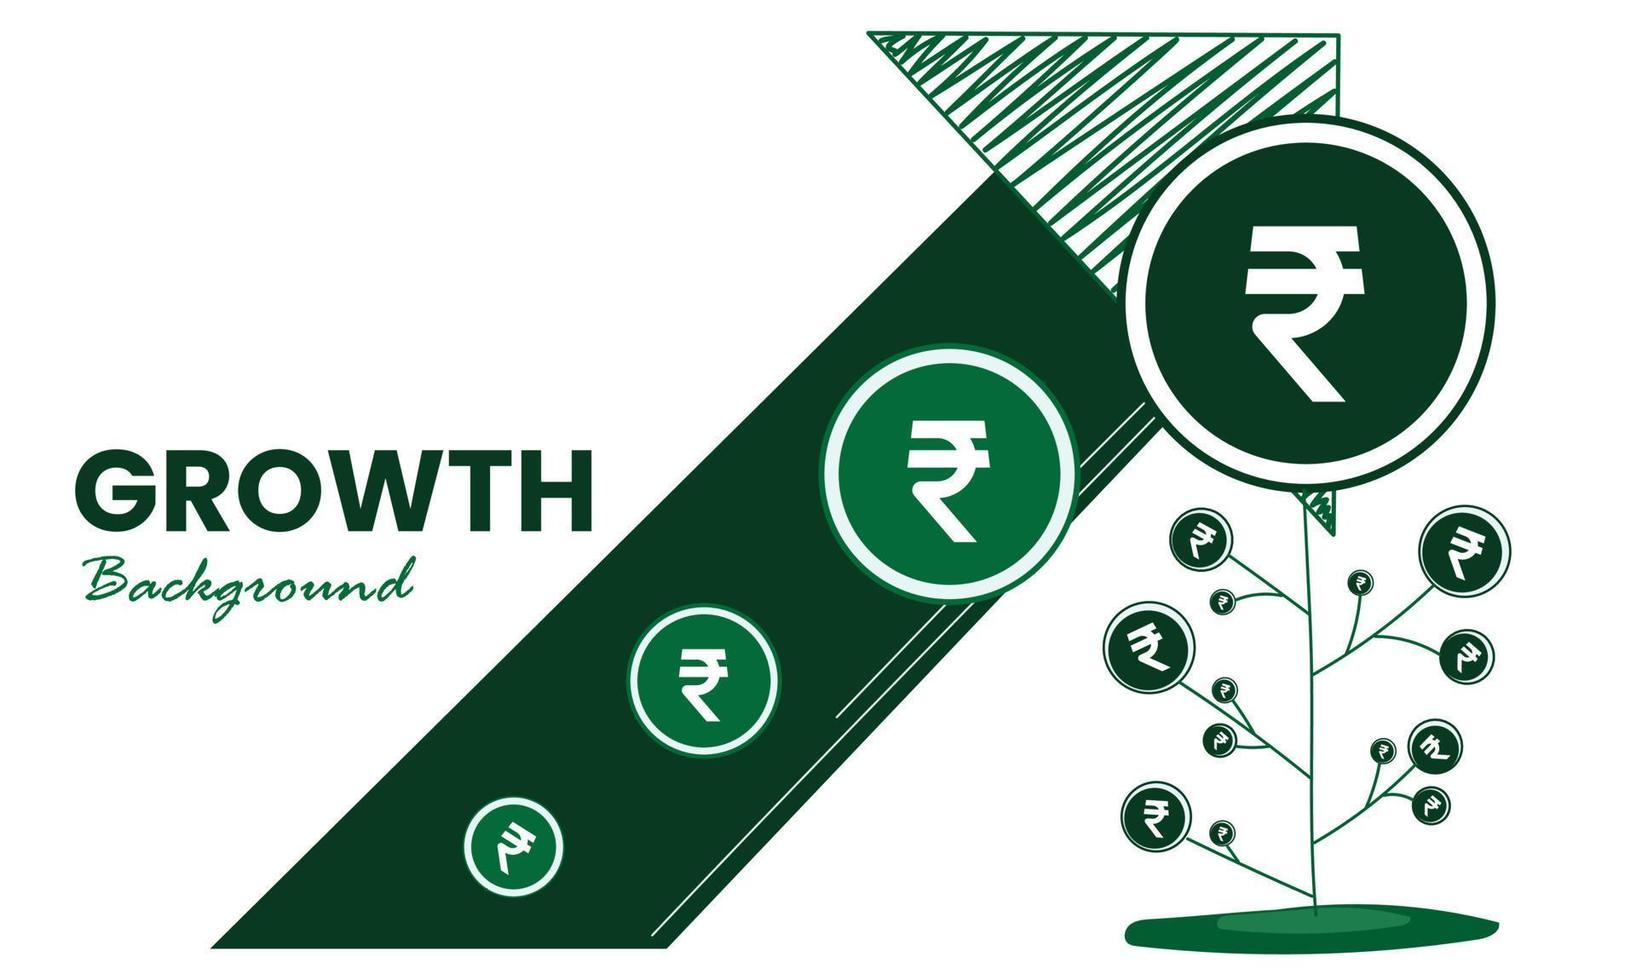 conceito de crescimento de dinheiro. rupia indiana crescendo na planta com seta de crescimento. ilustração em vetor de lucros em dinheiro de investimento e análise de dinheiro. investimentos financeiros.